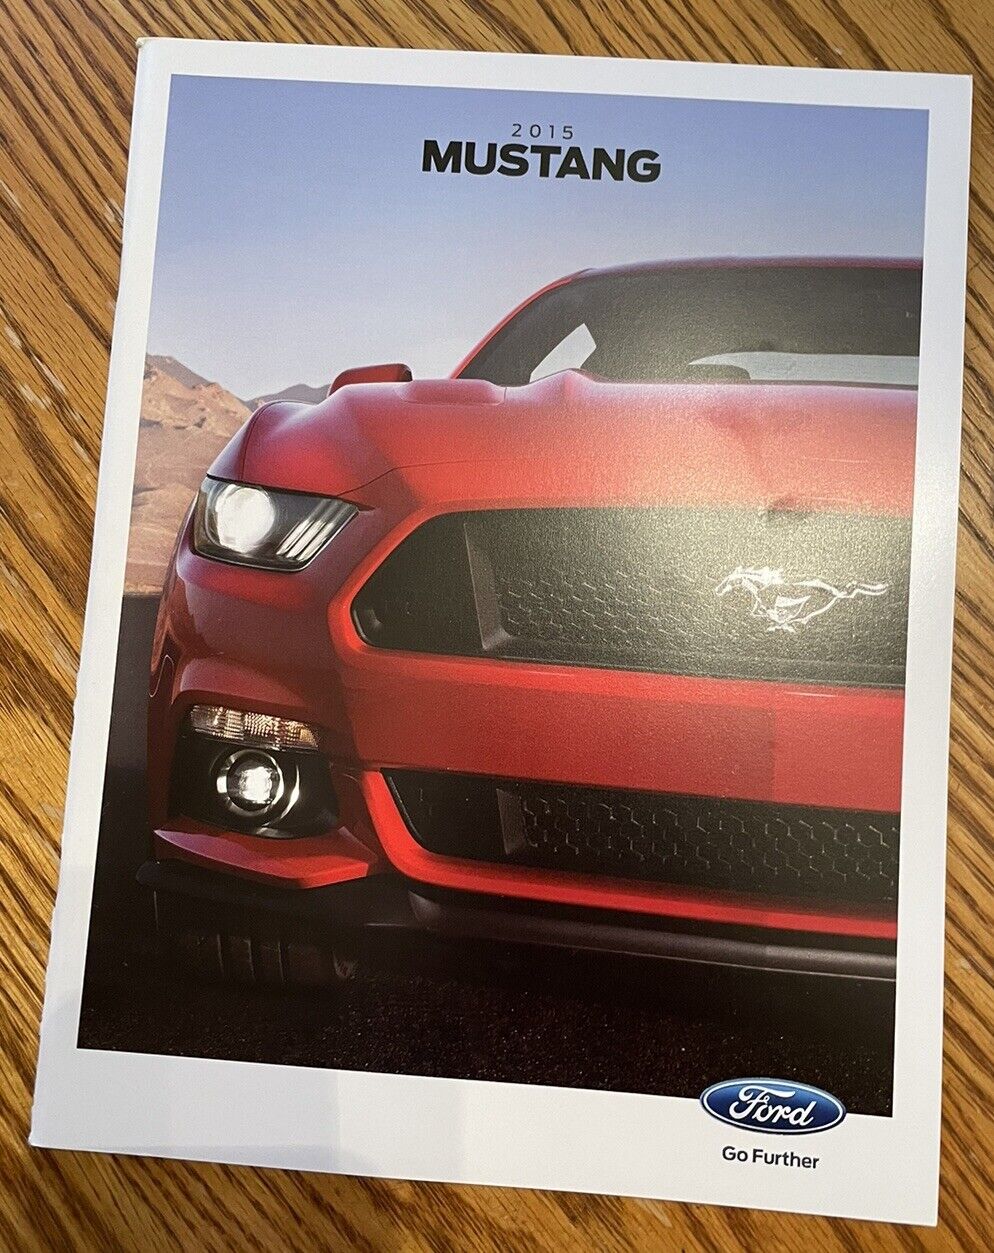 2015 Mustang Brochure - Mustang Brochures - 2015 Ford Brochures